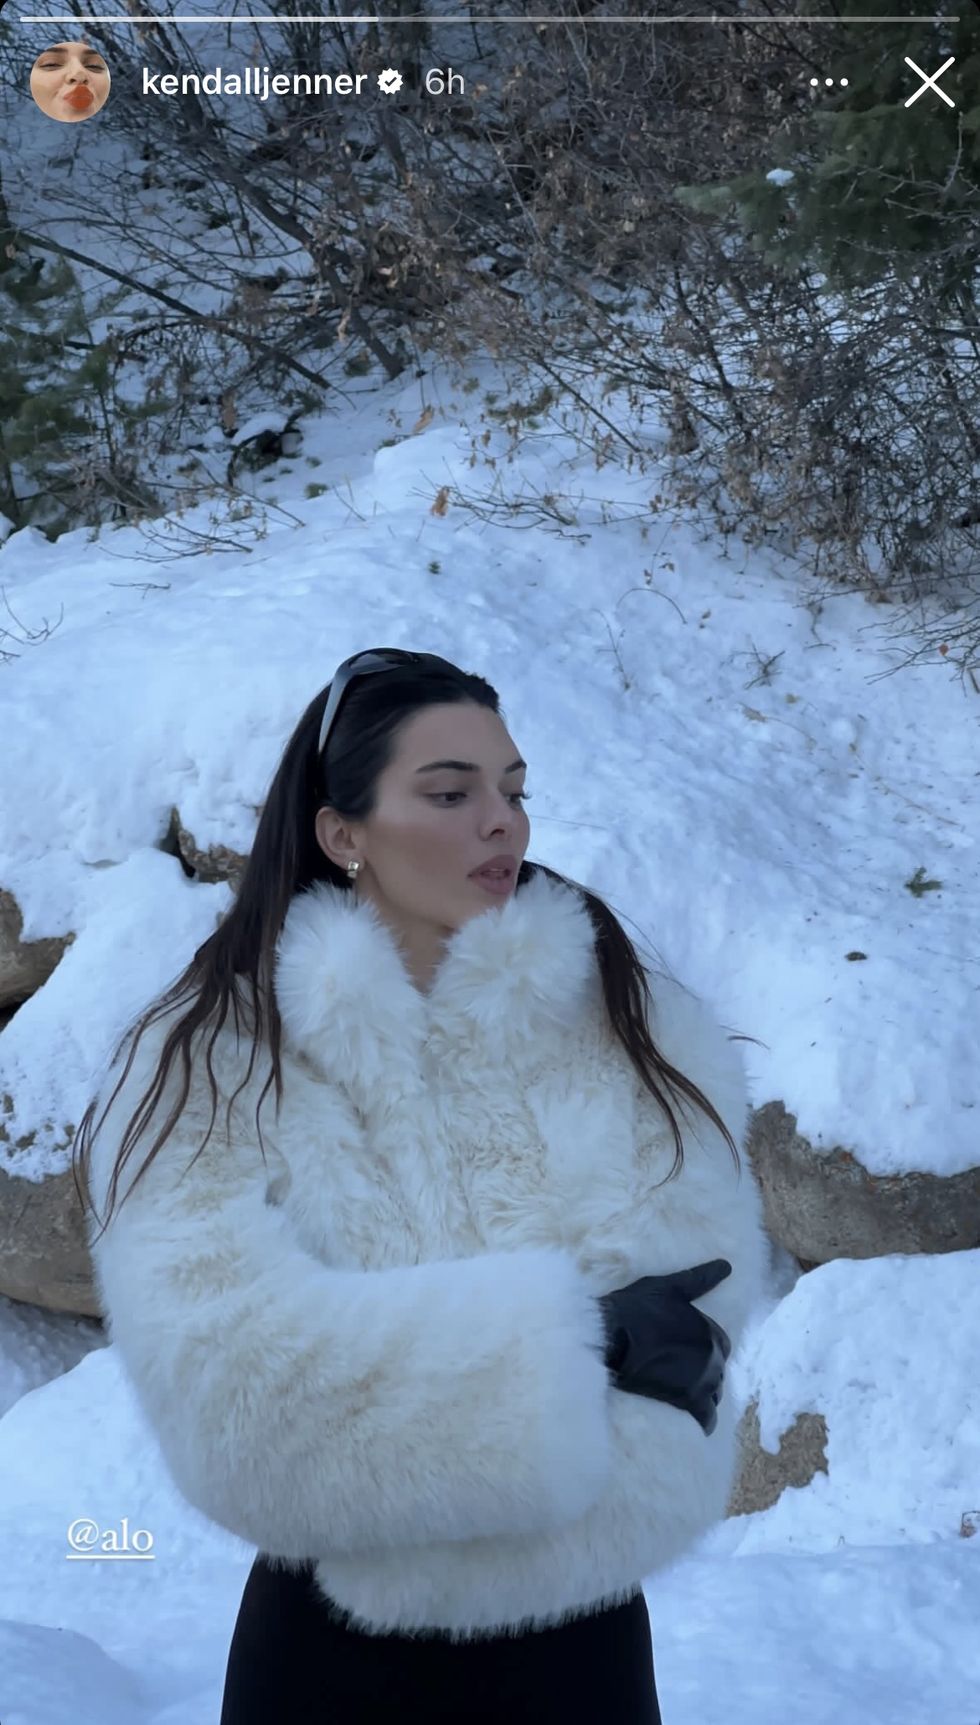 Kendall Jenner Does Luxury Après-Ski Dressing in White Fur Coat - Harper's BAZAAR